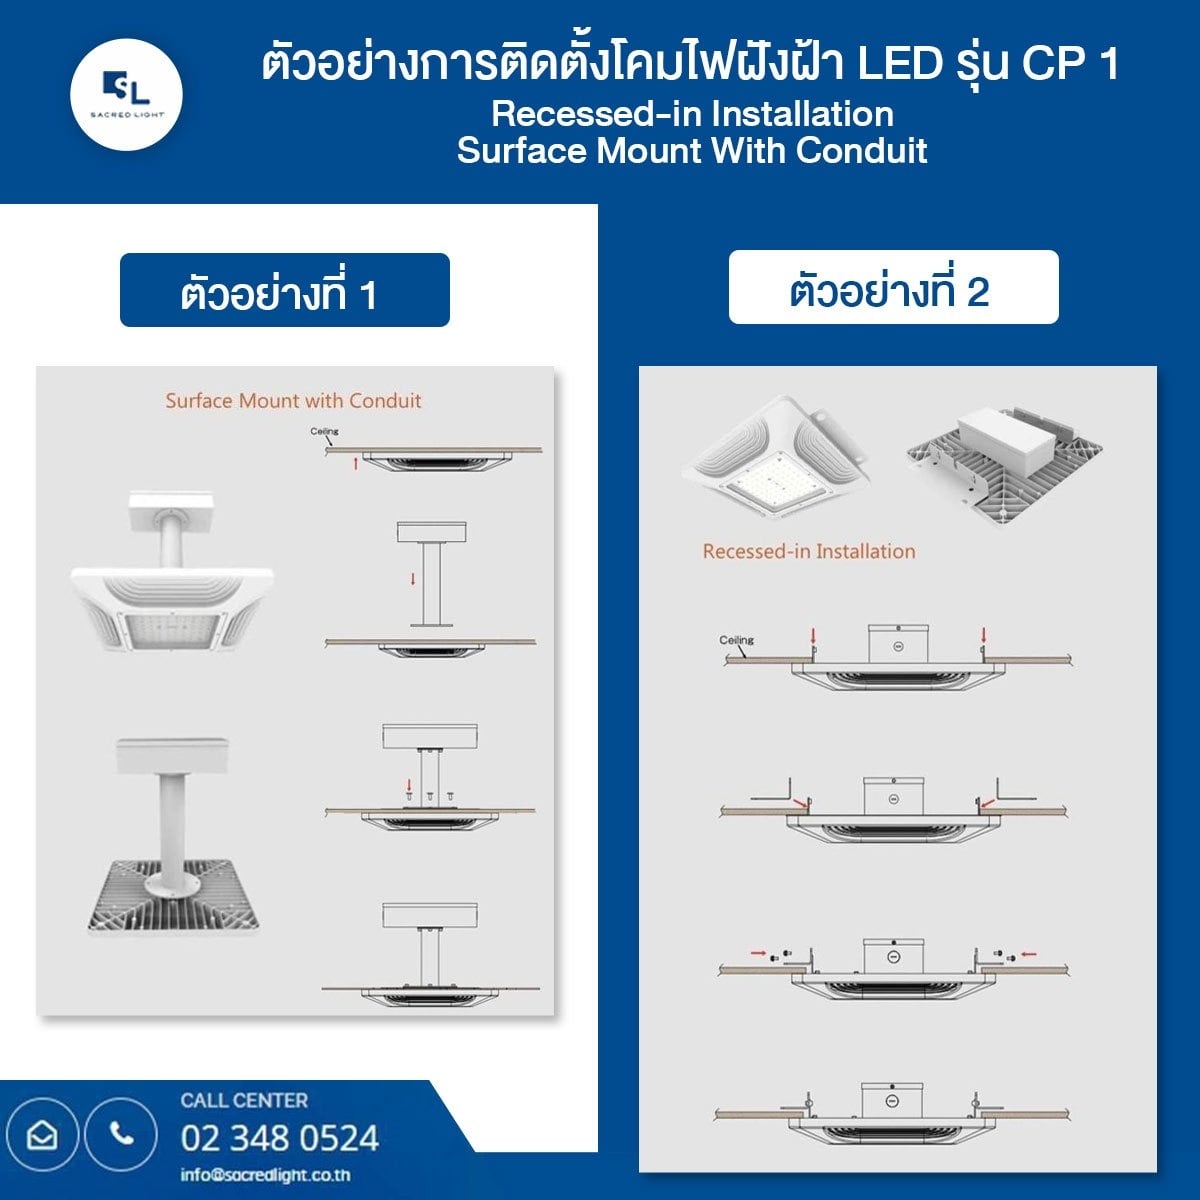 โคมฝังฝ้า LED โคมไฟห้องคลีนรูม LED รุ่น CP1 Series (LED CANOPY Light / LED Clean room )